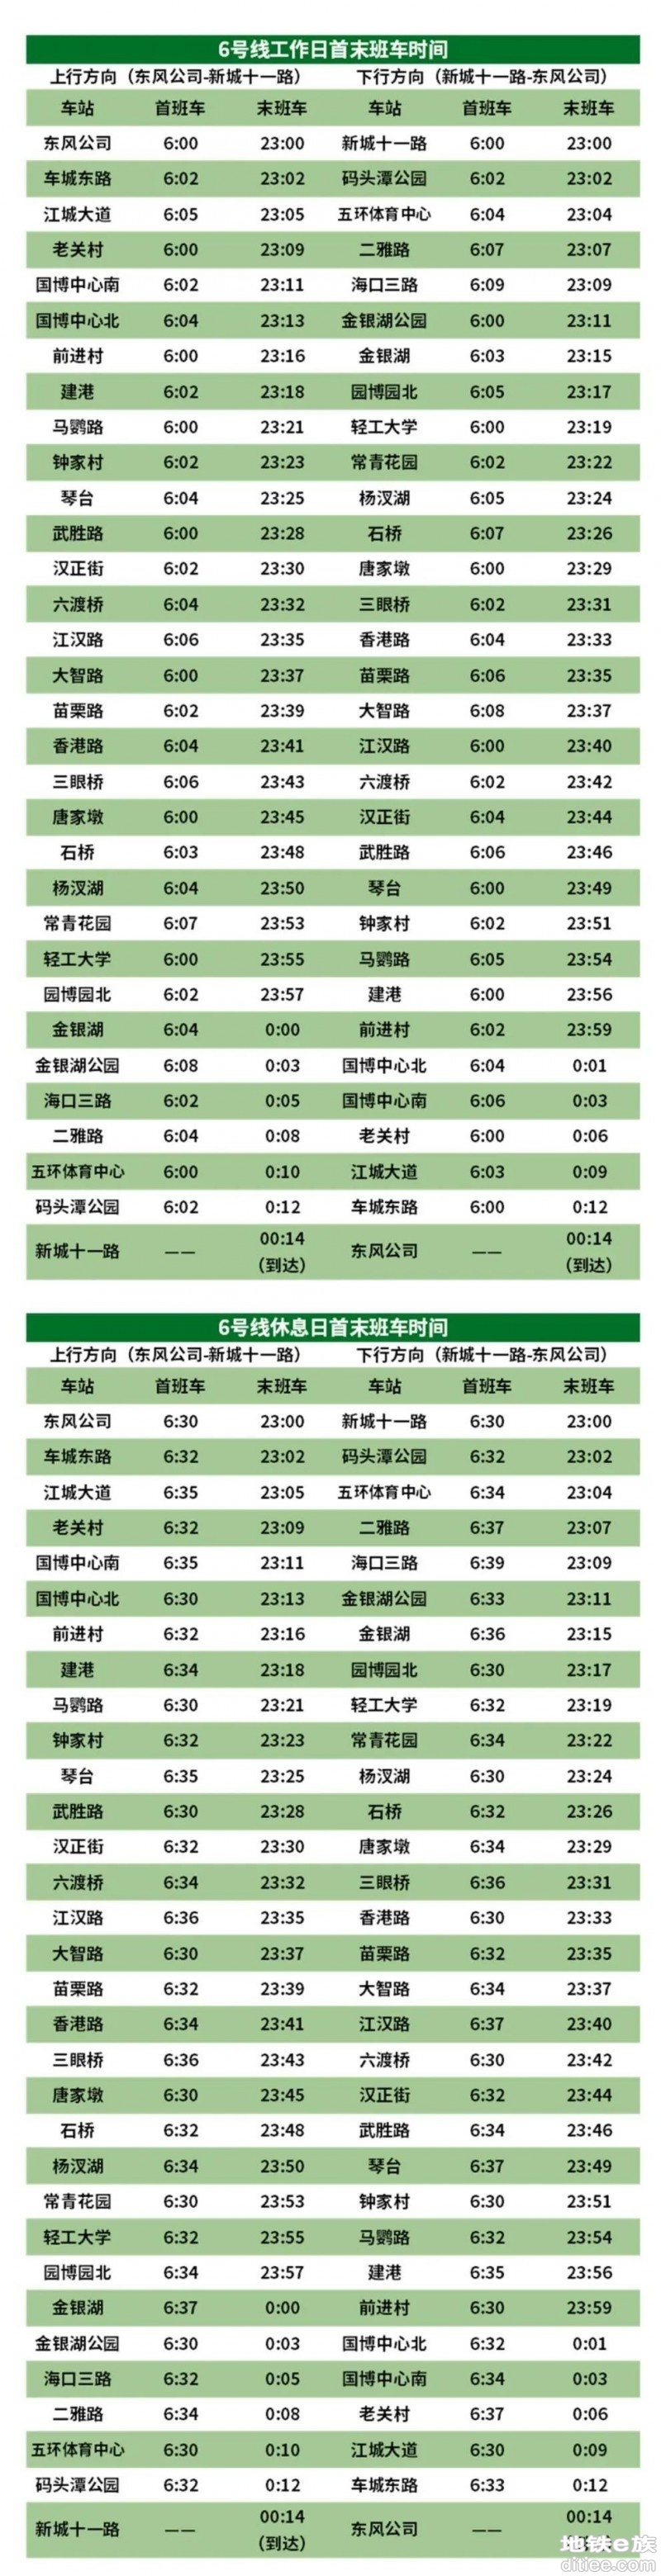 武汉地铁6月24日起这些线路运力再提升